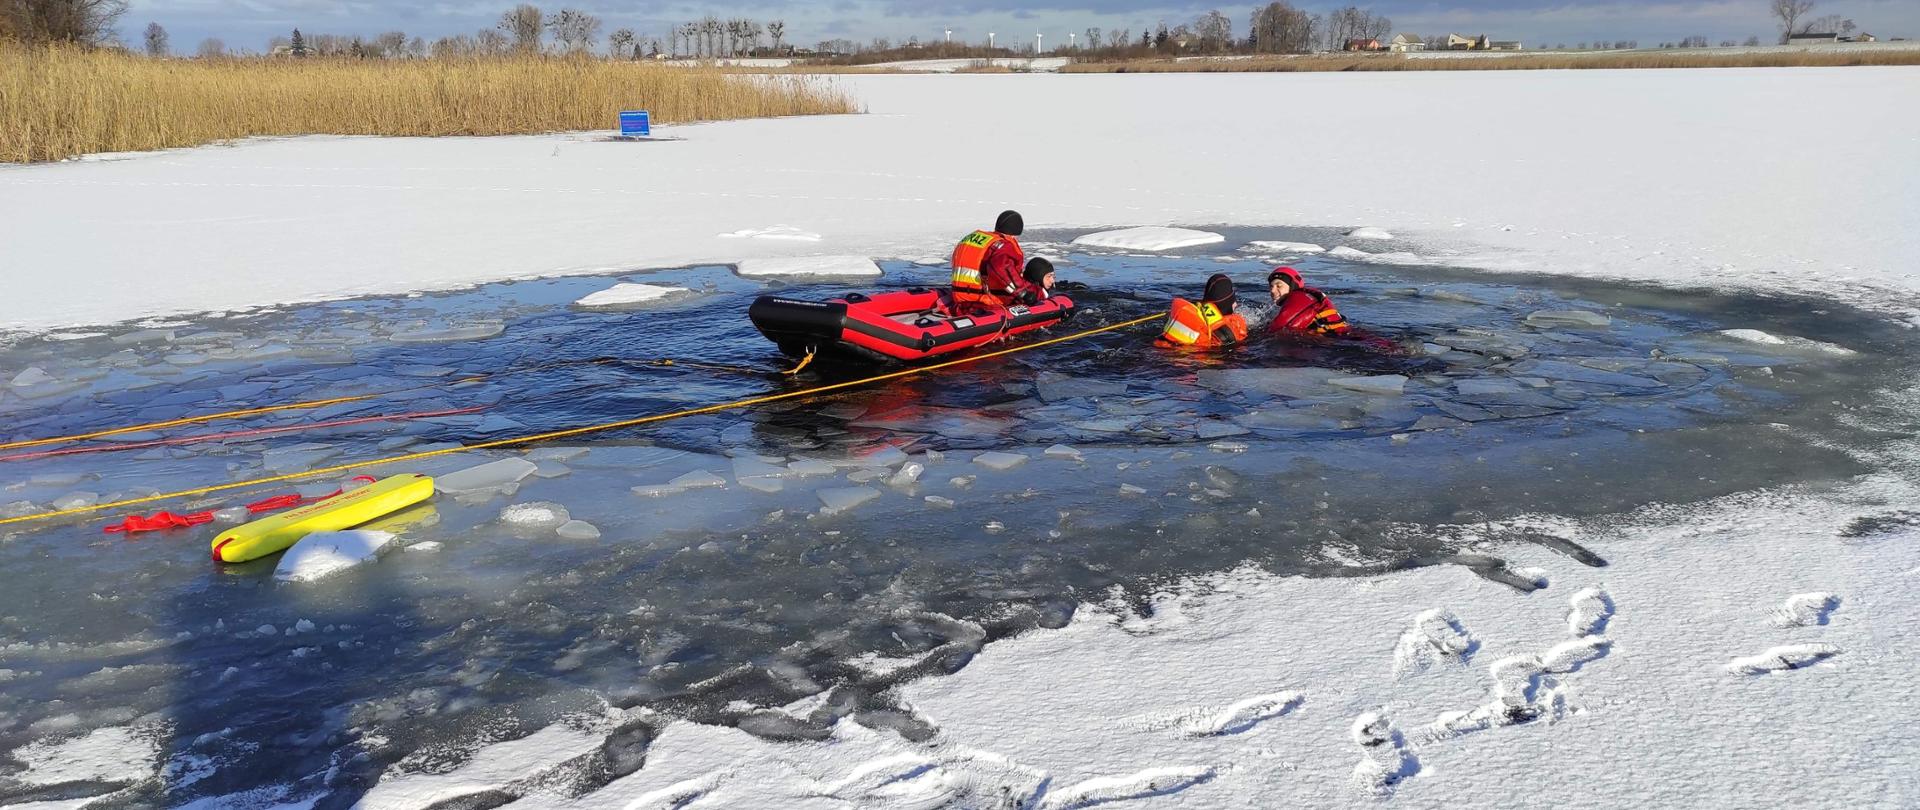 Zdjęcie przedstawia zamarznięte jezioro oraz dwóch strażaków będących w pontonie oraz 2 strażaków będących w wodzie. Sytuacja na zdjęciu przedstawia ćwiczenia strażaków, którzy pomagają osobie pod którą załamał się lód.